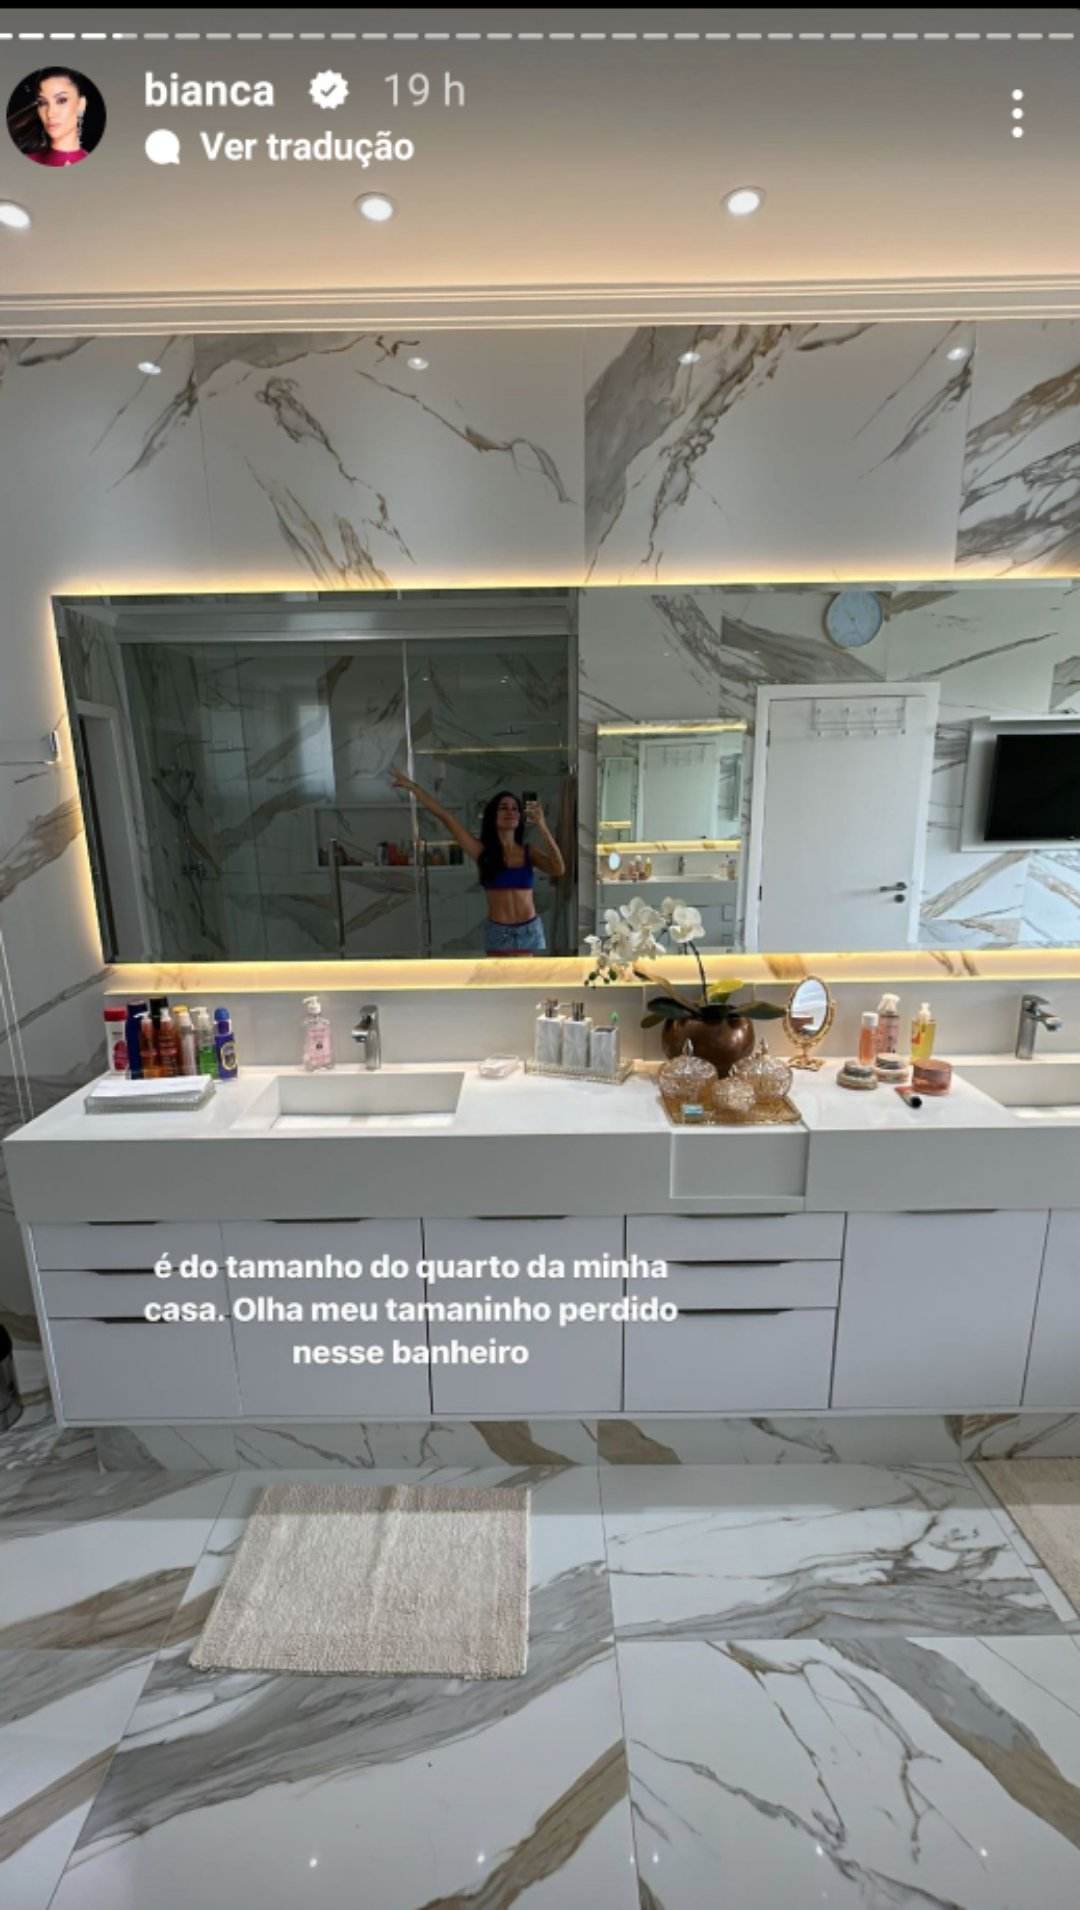 Bianca Andrade banheiro da mãe